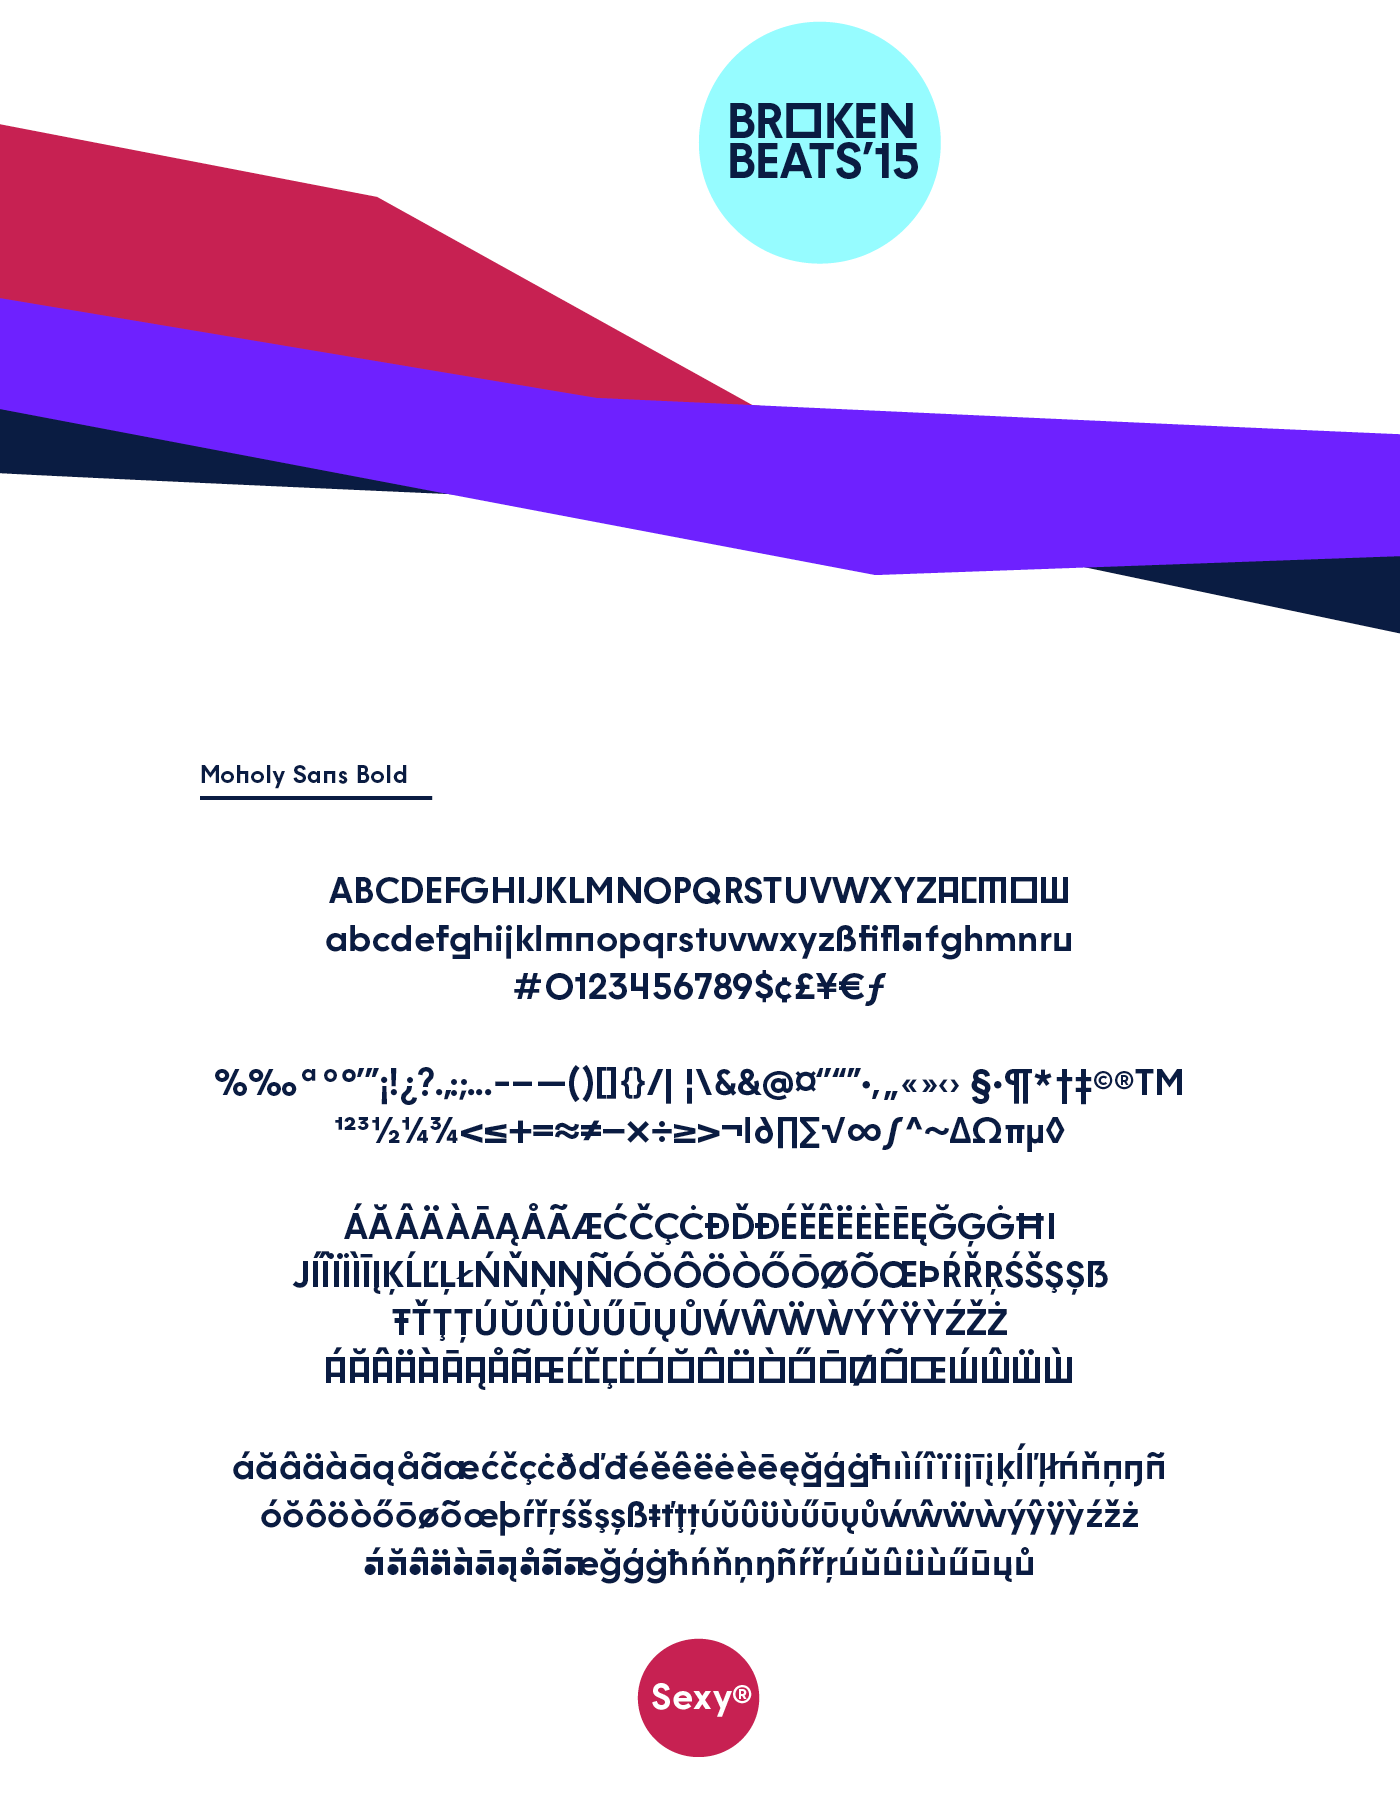 Moholy Sans Typeface bauhaus type design geometric language